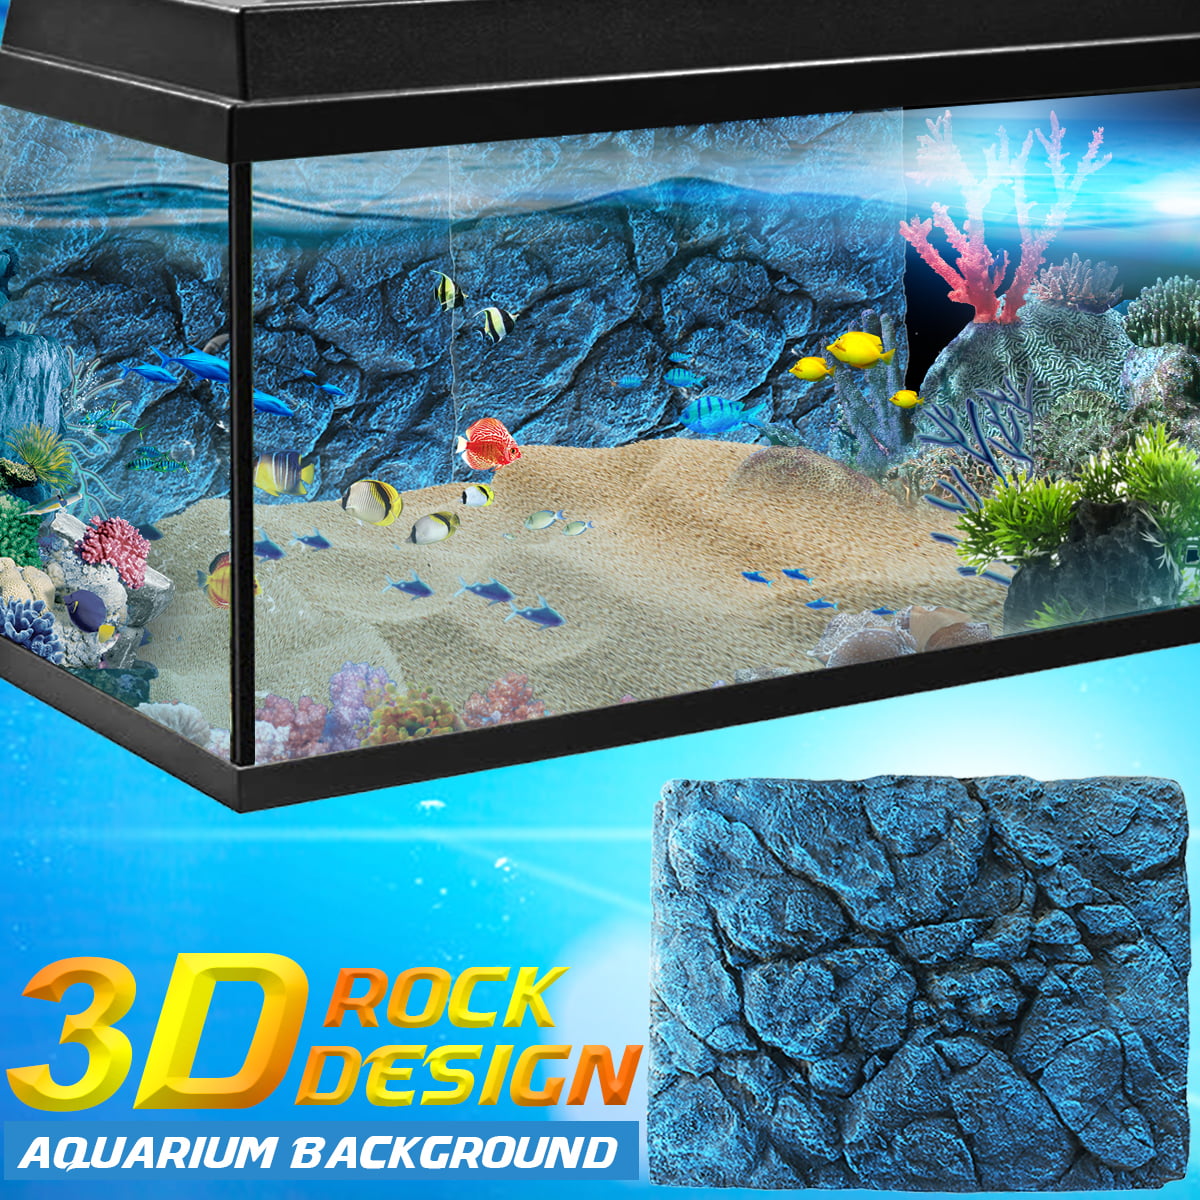 3d Pu Rock Stone Aquarium Background Backdrop For Fish Tank Decoration Walmart Com Walmart Com